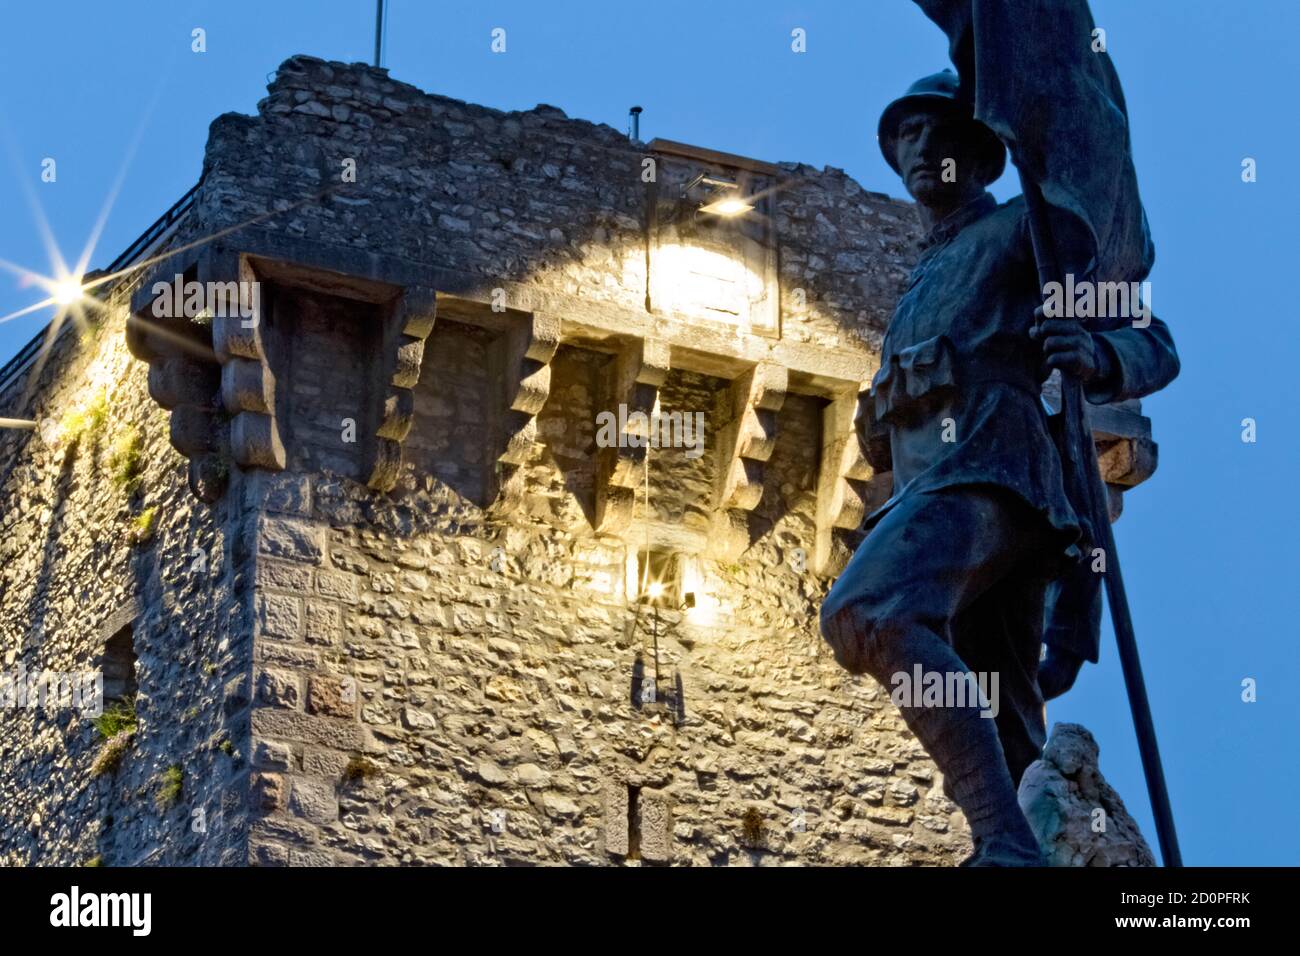 Enego: Das Denkmal für die Gefallenen des Großen Krieges und der mittelalterliche Turm, der von den Scaligeri gebaut wurde. Hochebene von Asiago, Provinz Vicenza, Venetien, Italien. Stockfoto